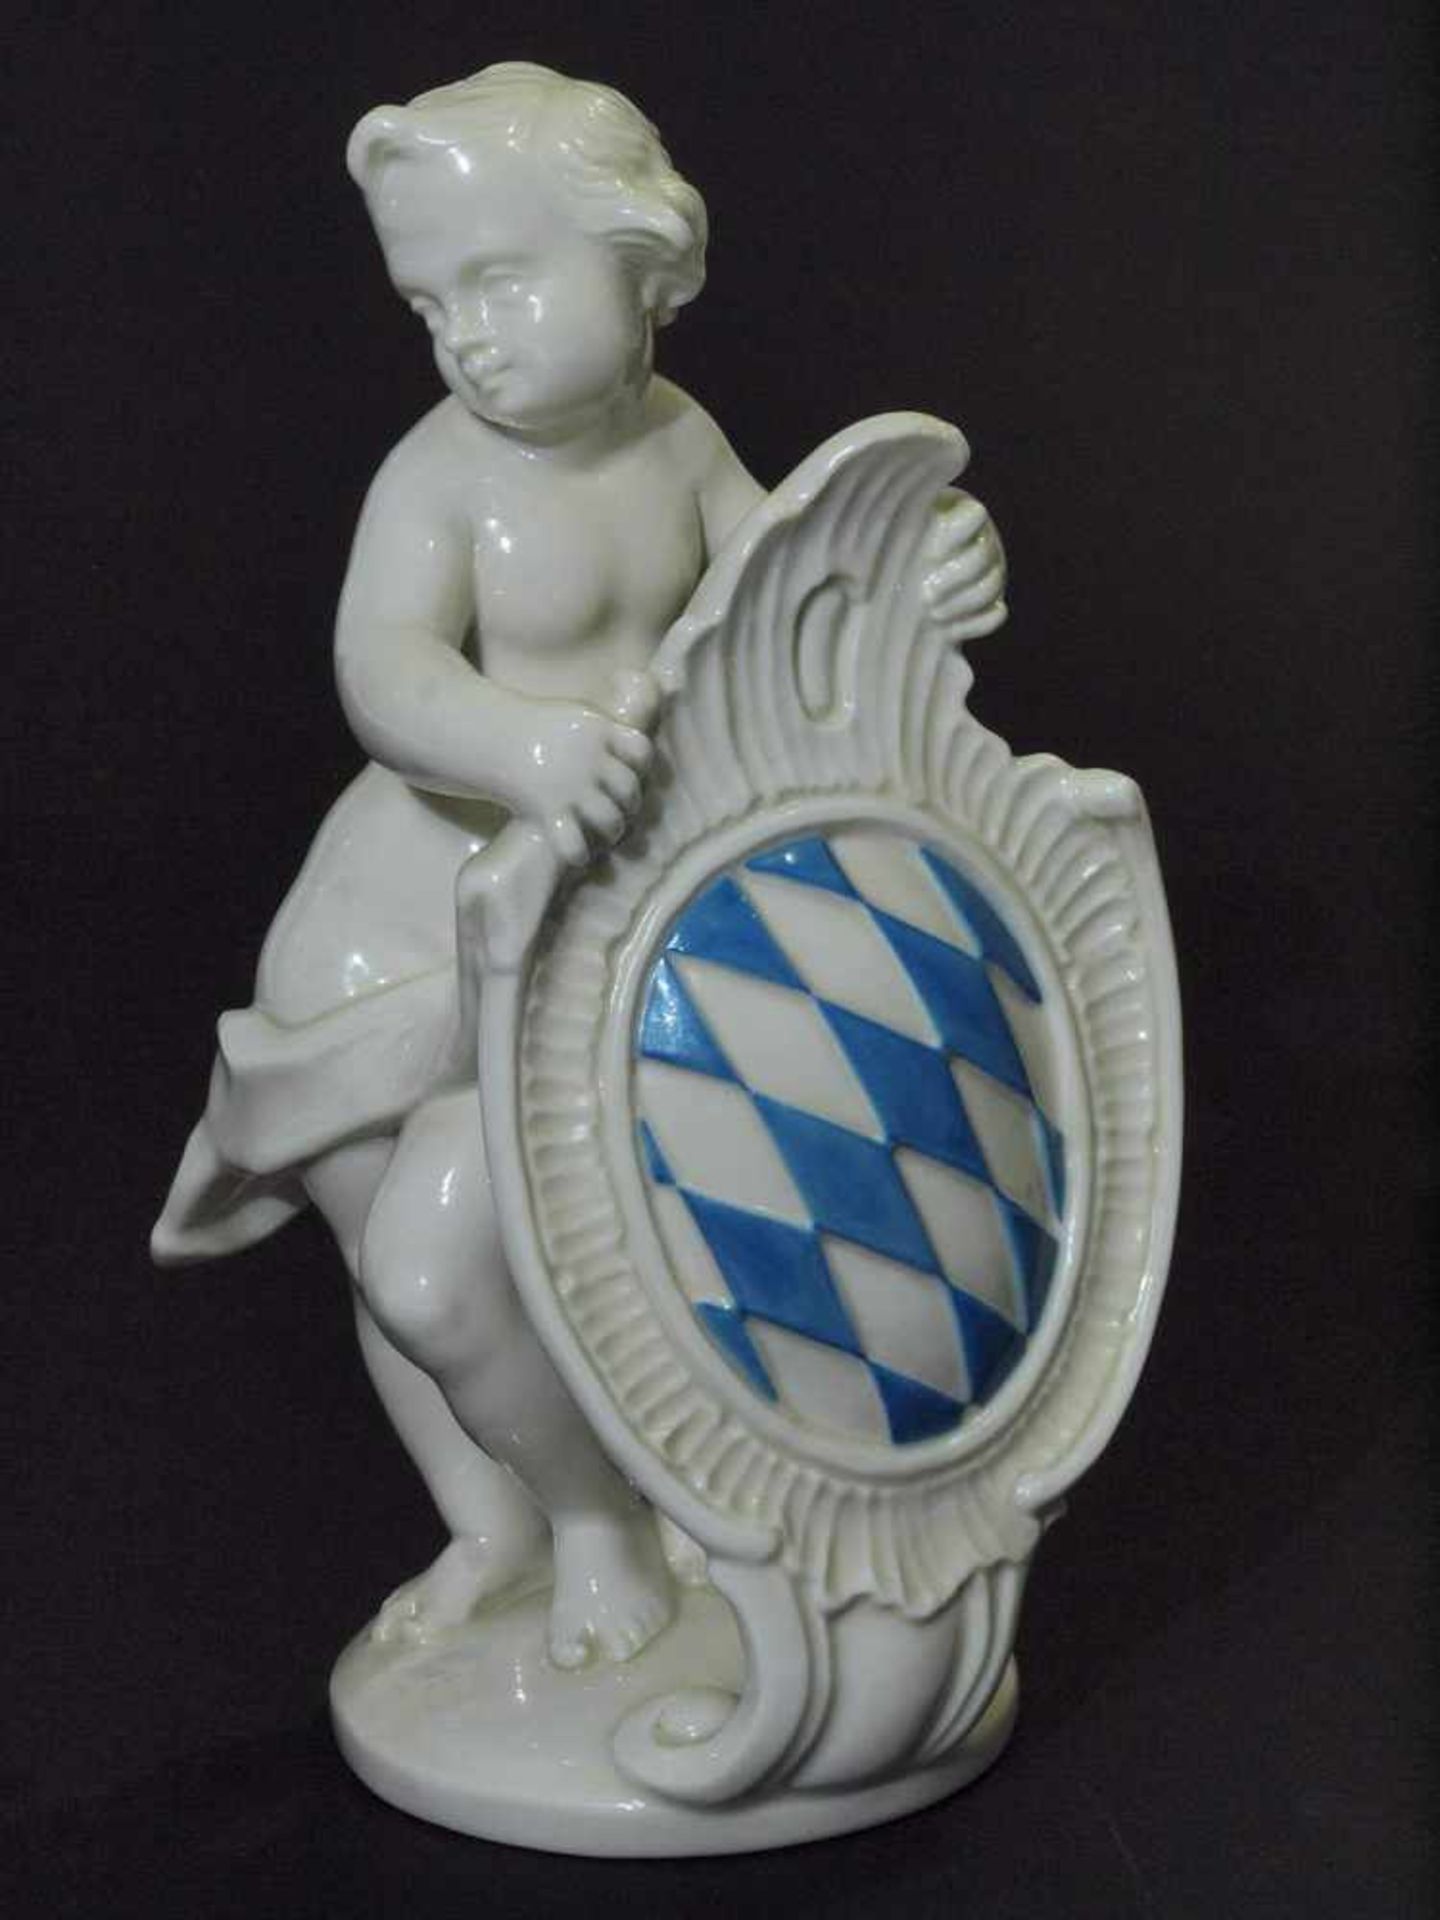 Putto mit bayerischem Wappen. Putto mit bayerischem Wappen. NYMPHENBURG, Marke 1976 - 1997. - Bild 2 aus 6